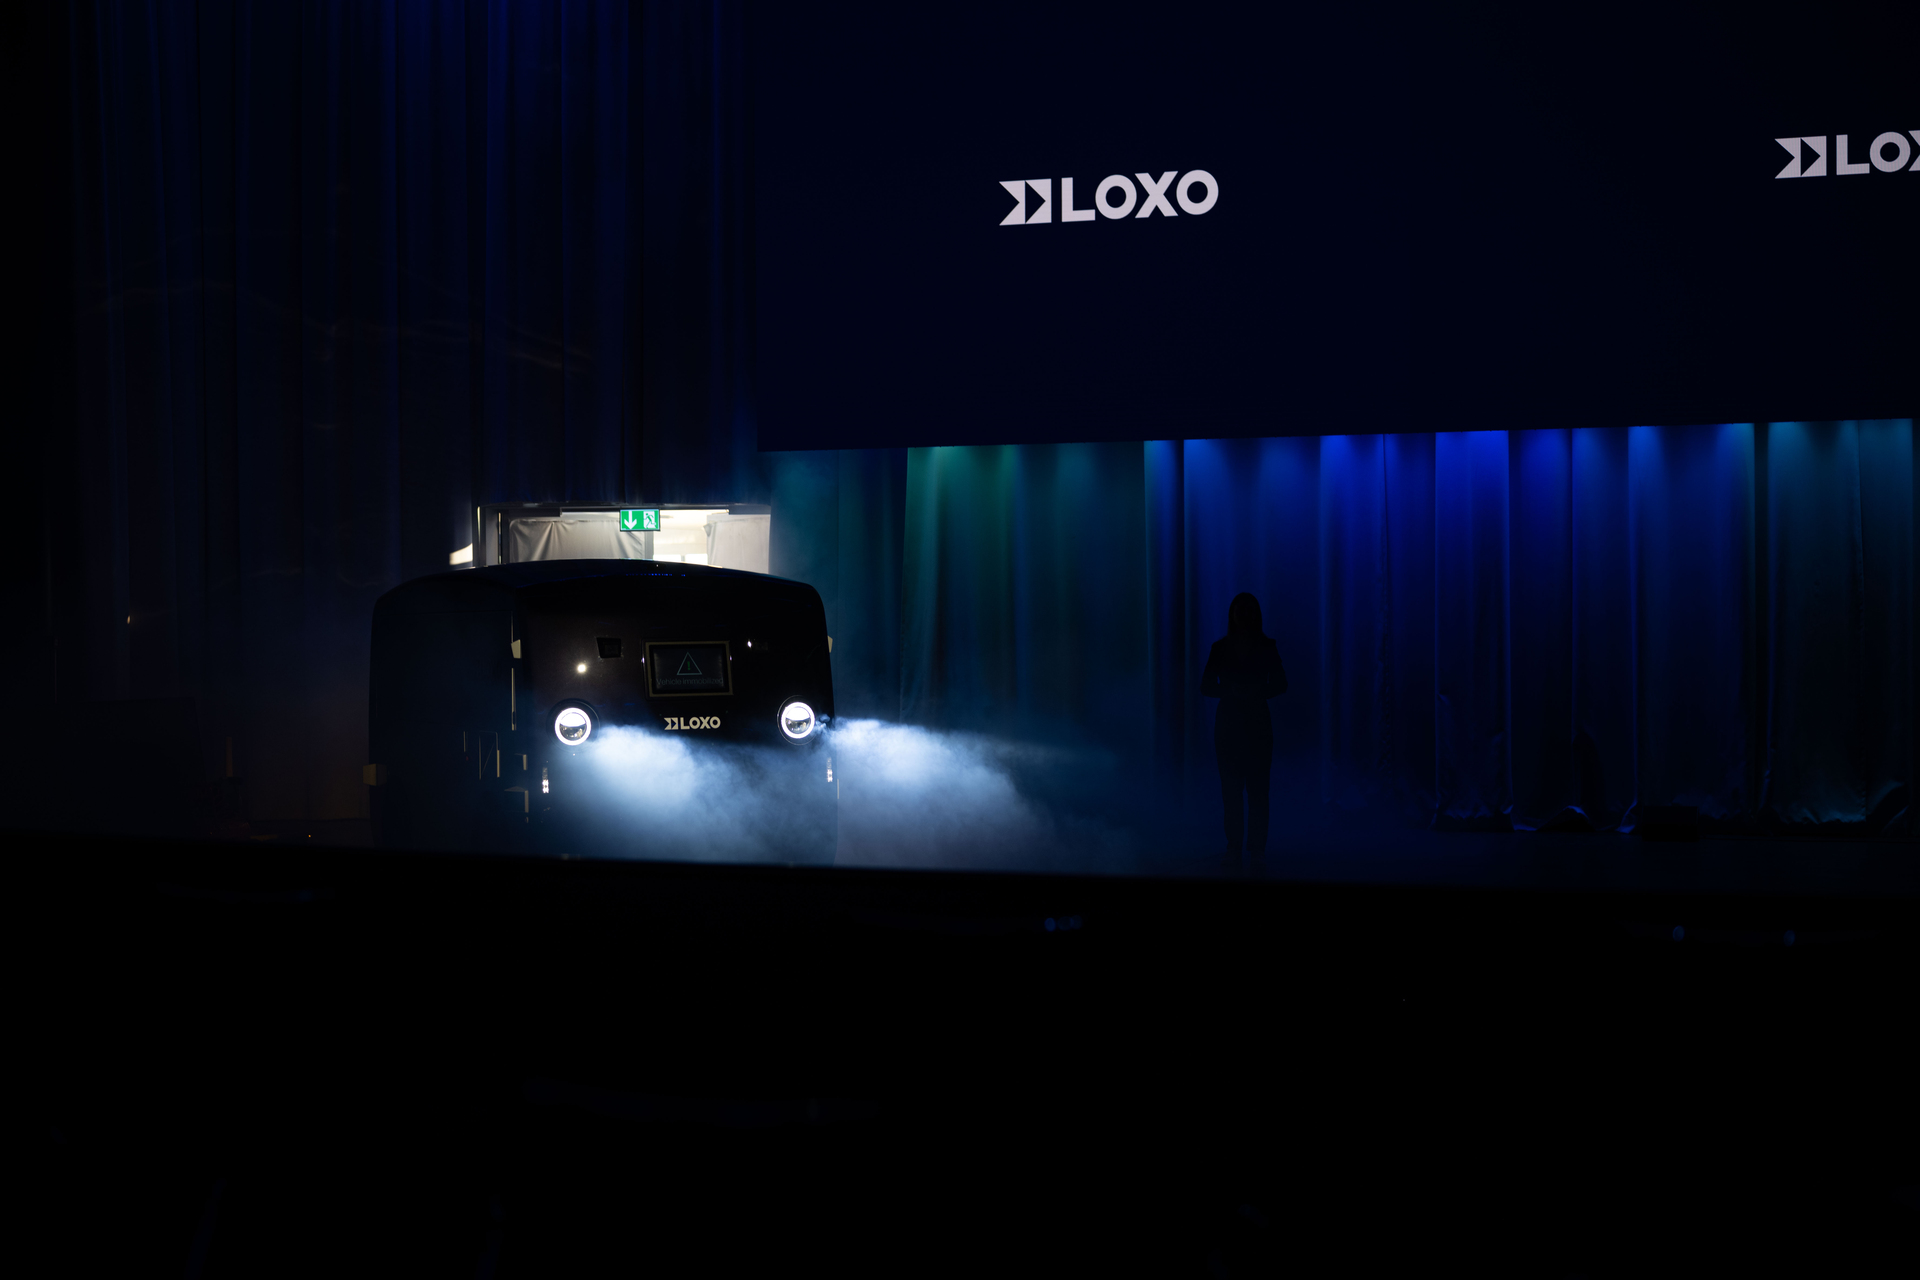 LOXO: Alpha to samojezdny van wyprodukowany w całości w Szwajcarii i zaprezentowany 6 grudnia 2022 r. w Kursaal w Bernie podczas konferencji prasowej start-upu LOXO